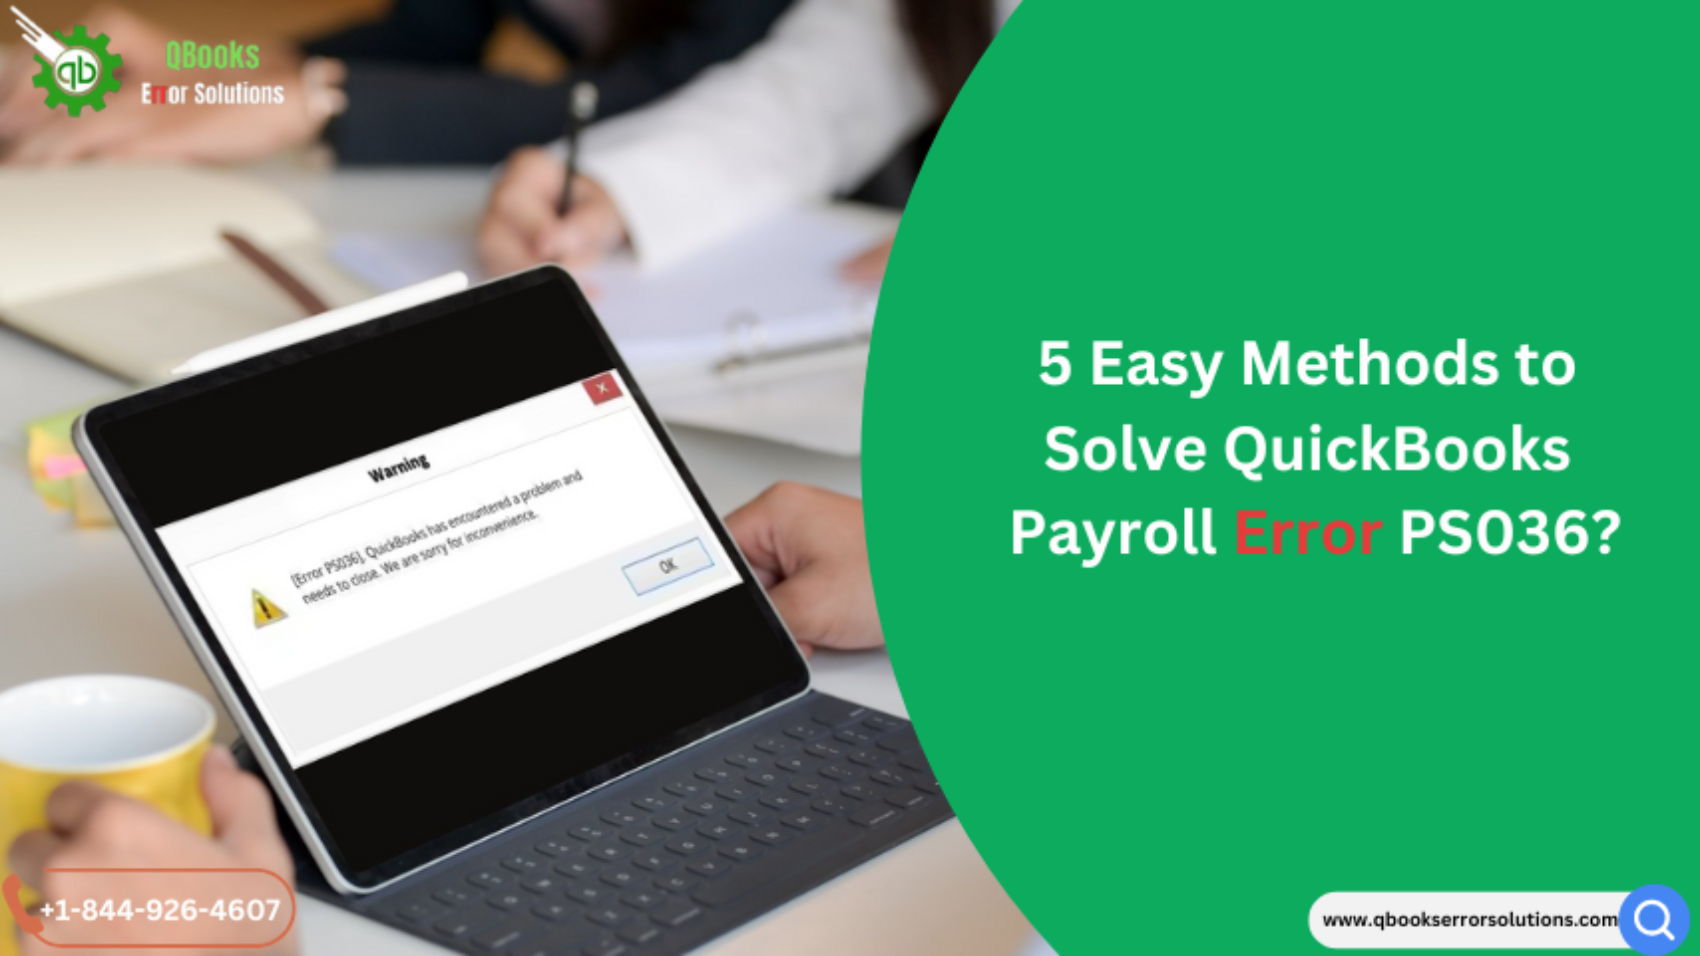 5 Easy Methods to Solve QuickBooks Payroll Error PS036